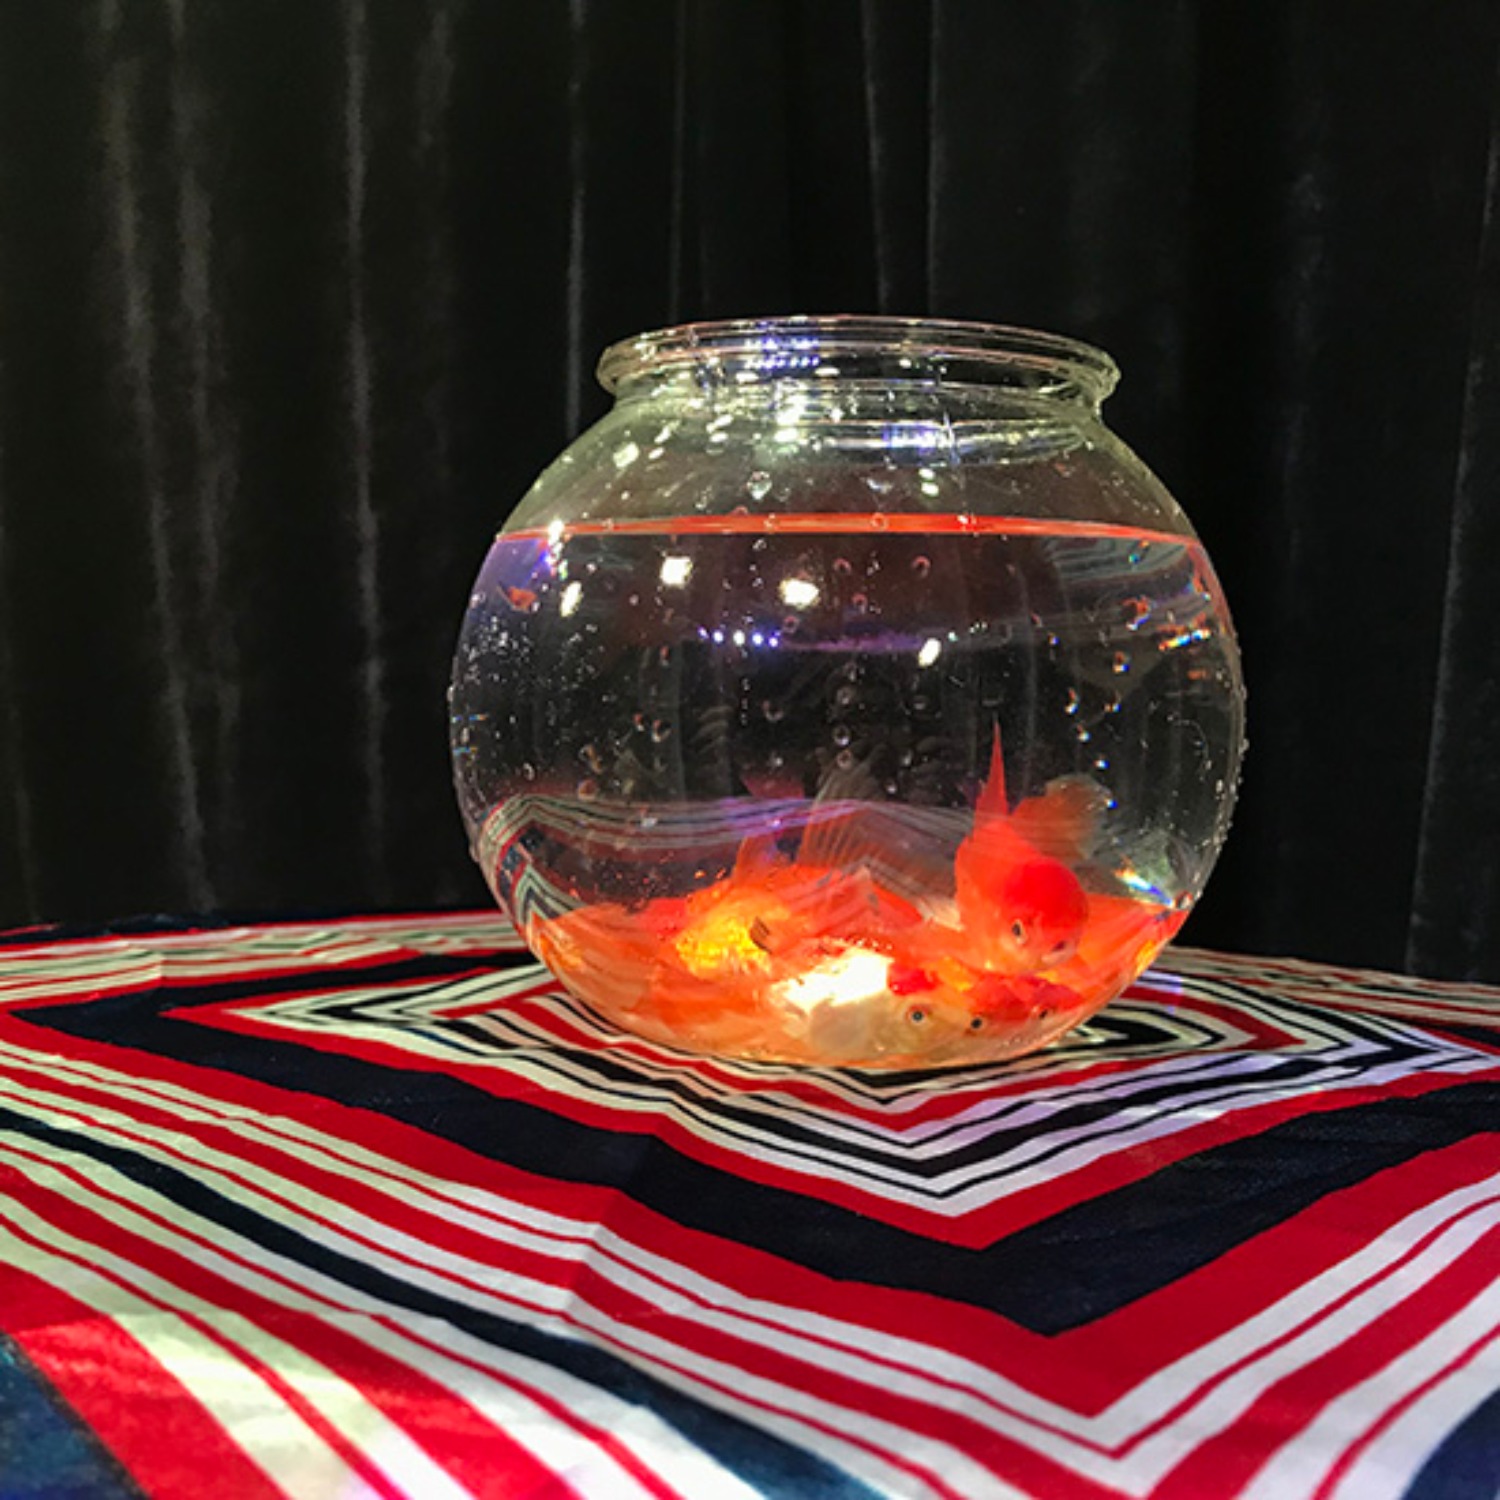 [매직 골드피쉬보울]Magic Goldfish Bowl (Small) 빈 어항에 순식간에 금붕어가!